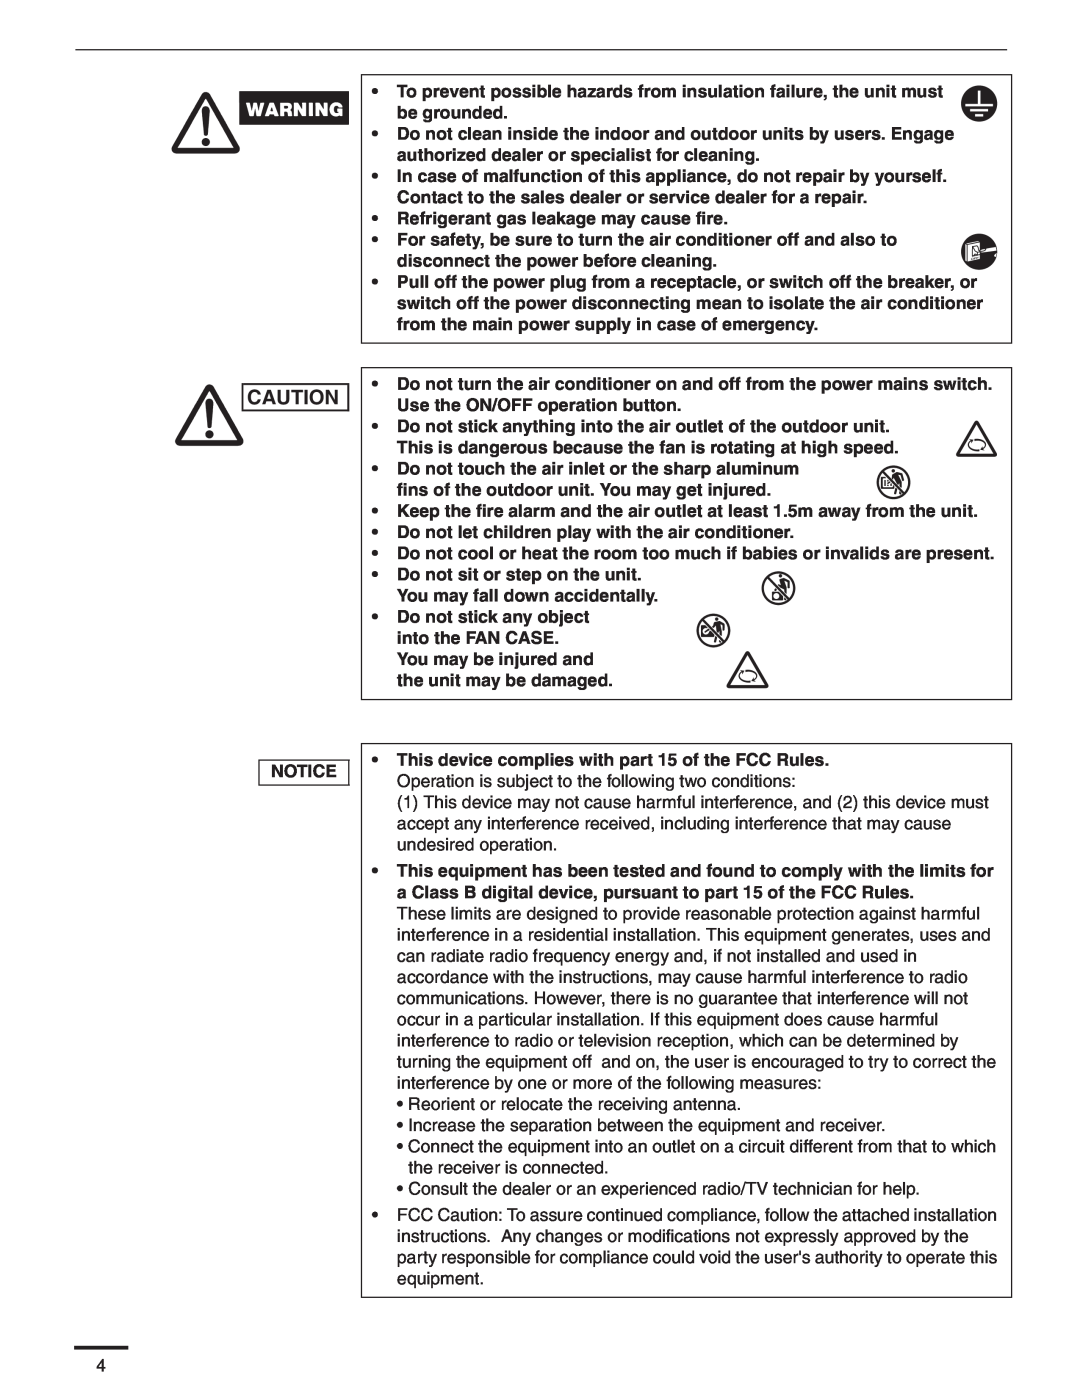 Panasonic CS-KS24NKU, CU-KS24NKUA service manual •Refrigerant gas leakage may cause fire 